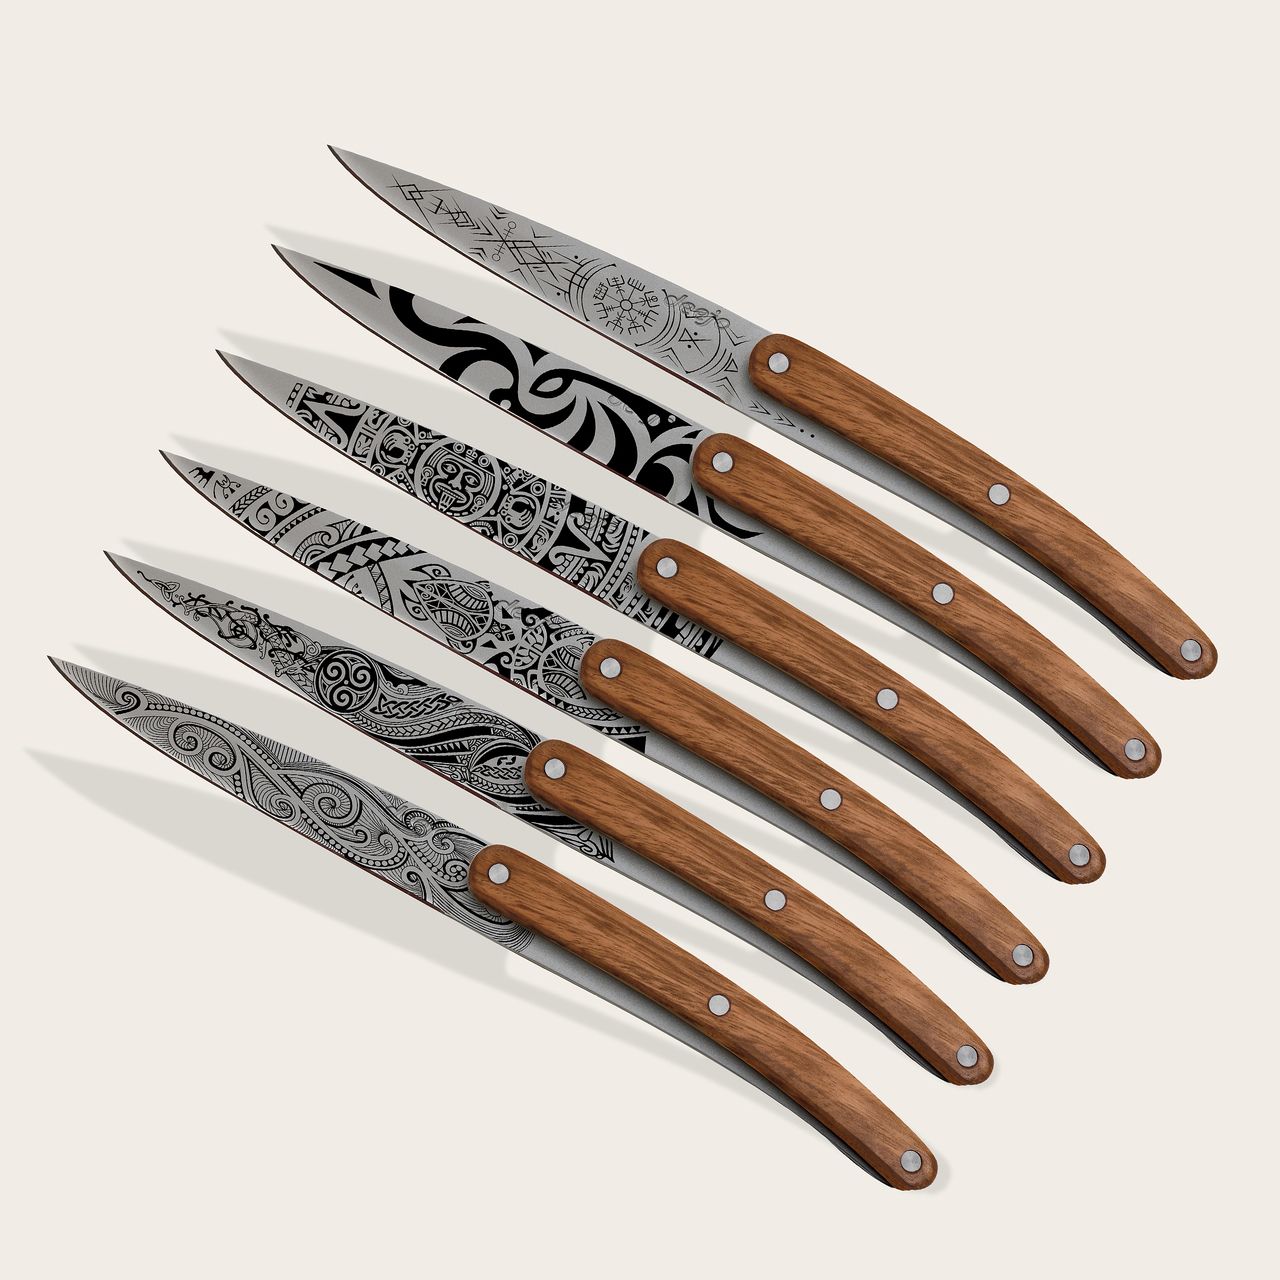 https://www.deejo.com/medias/produits/2379953151/22949_1280-6-deejo-paring-knives-zebra-wood-tattoos-of-the-world.jpg